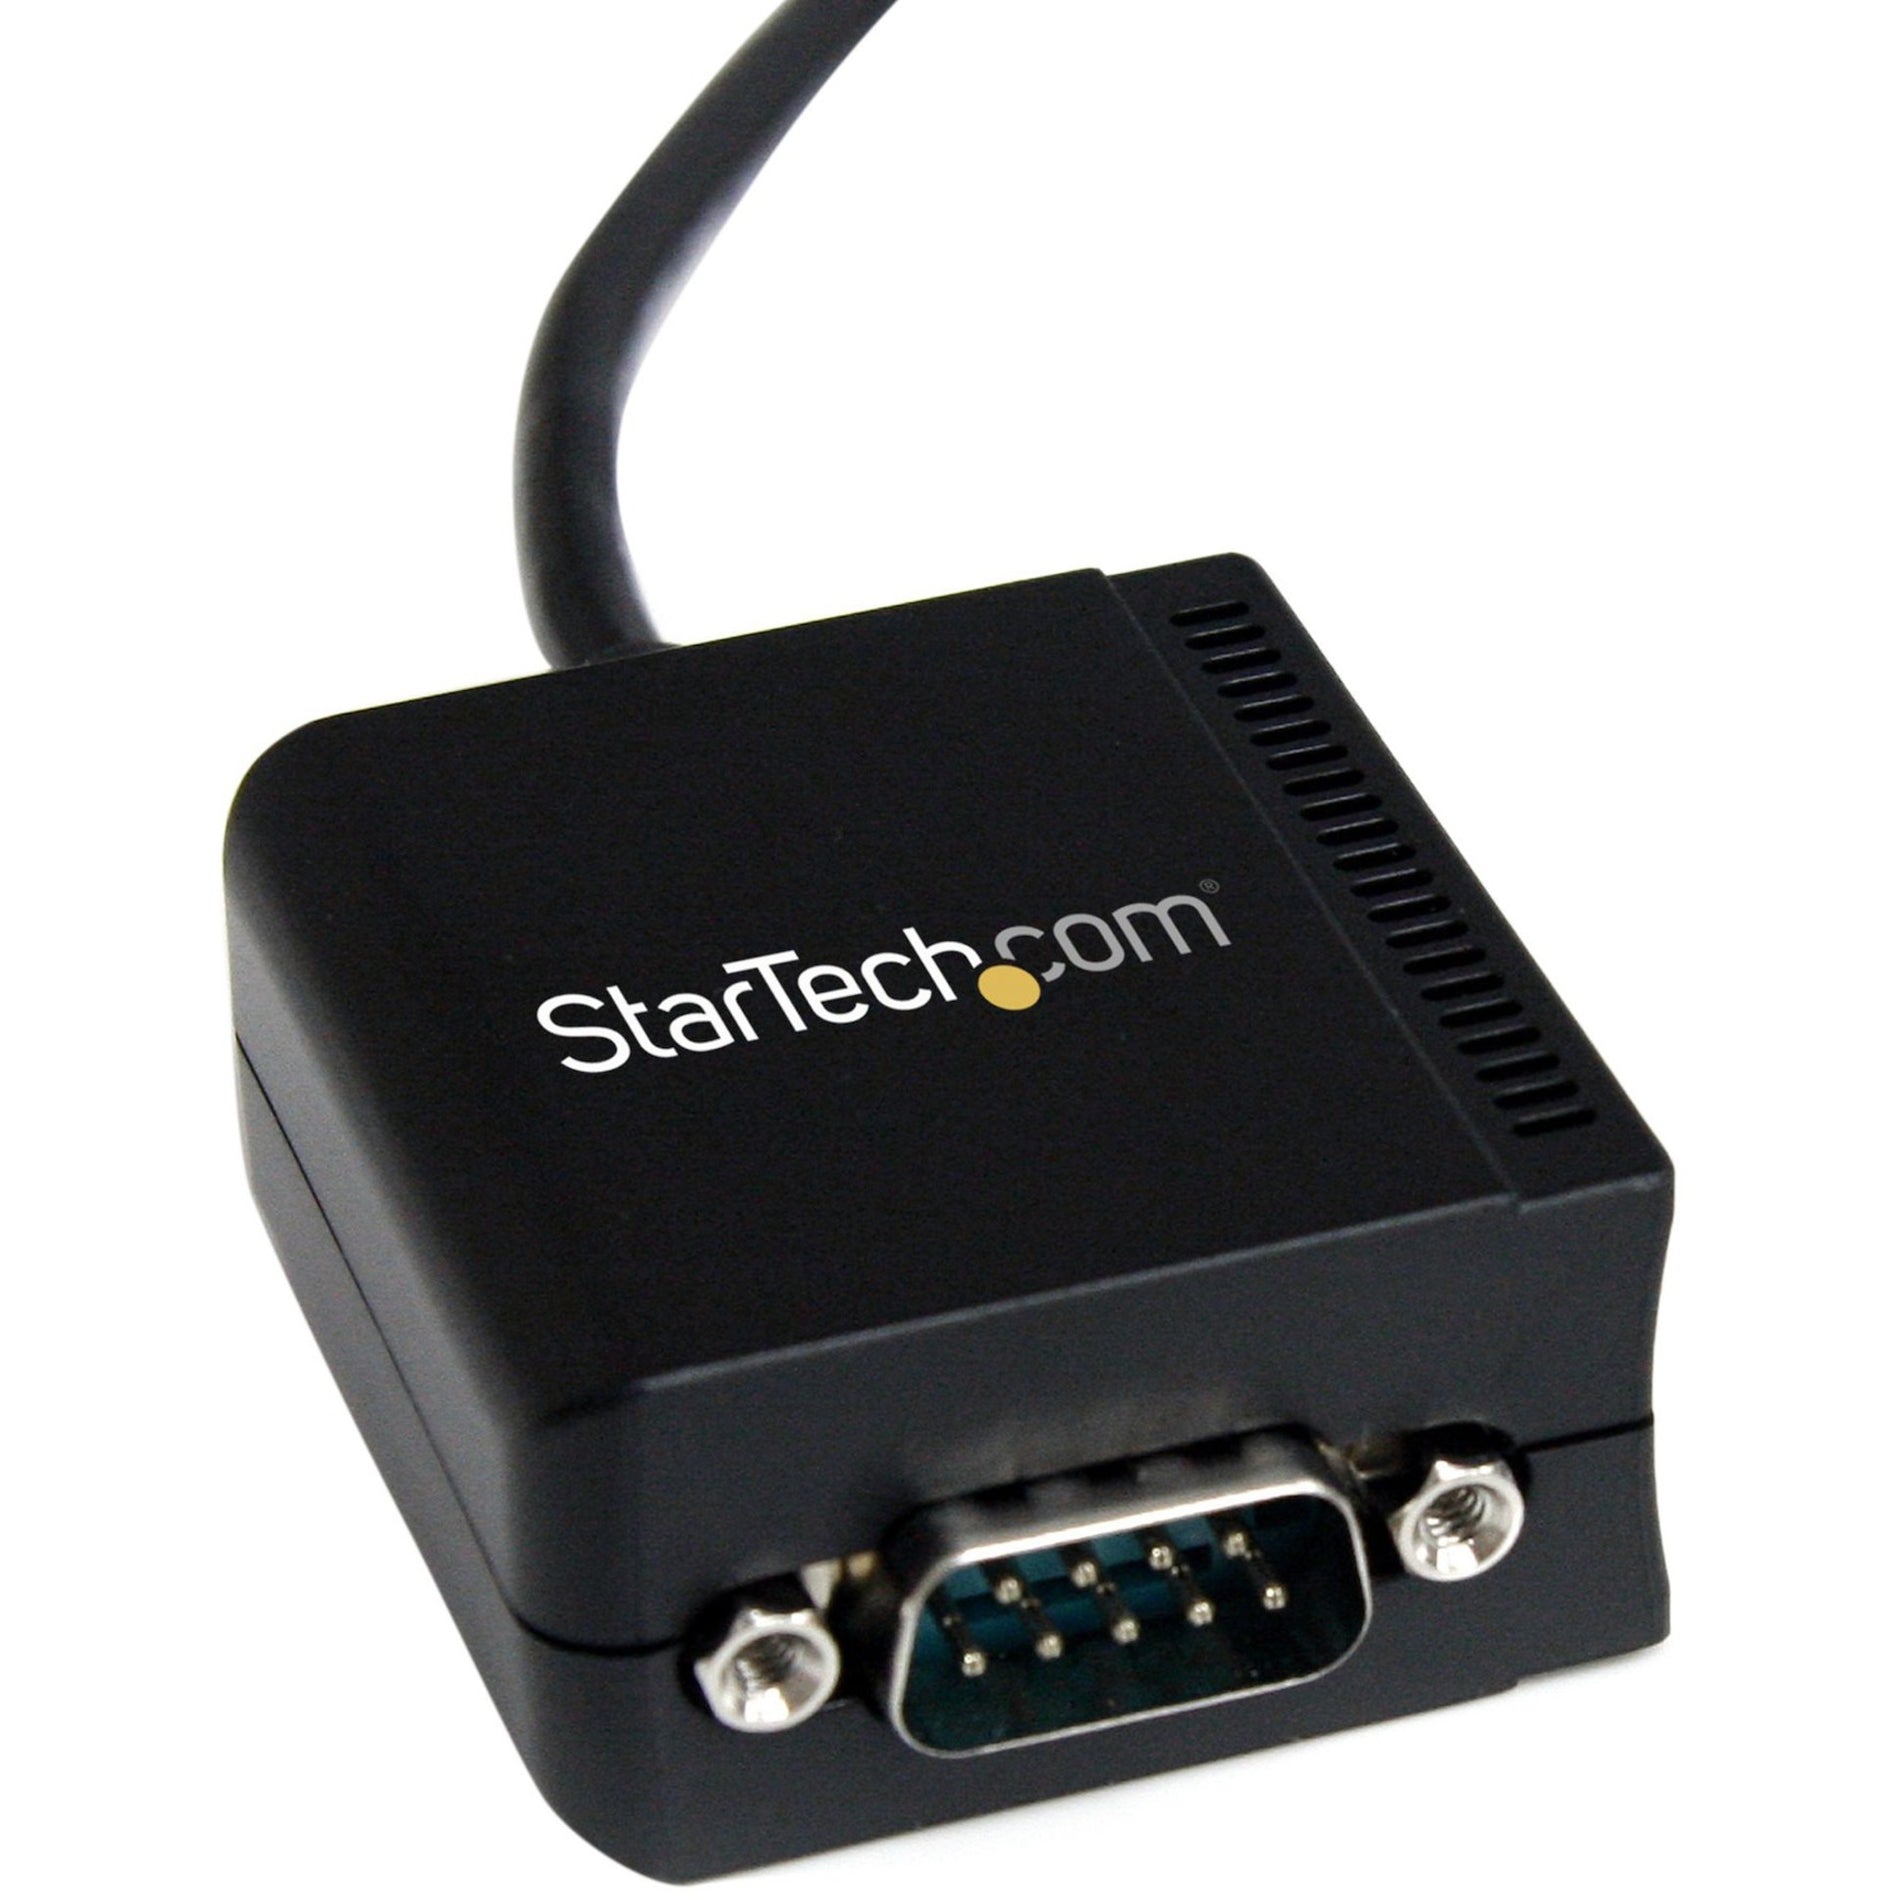 StarTech.com: ستارتك.كوم ICUSB2321FIS 1 منفذ كبل محول USB إلى تسلسلي RS232 مع عزل، حماية ضد الصدمات، طول الكابل 8.20 قدم، أسود